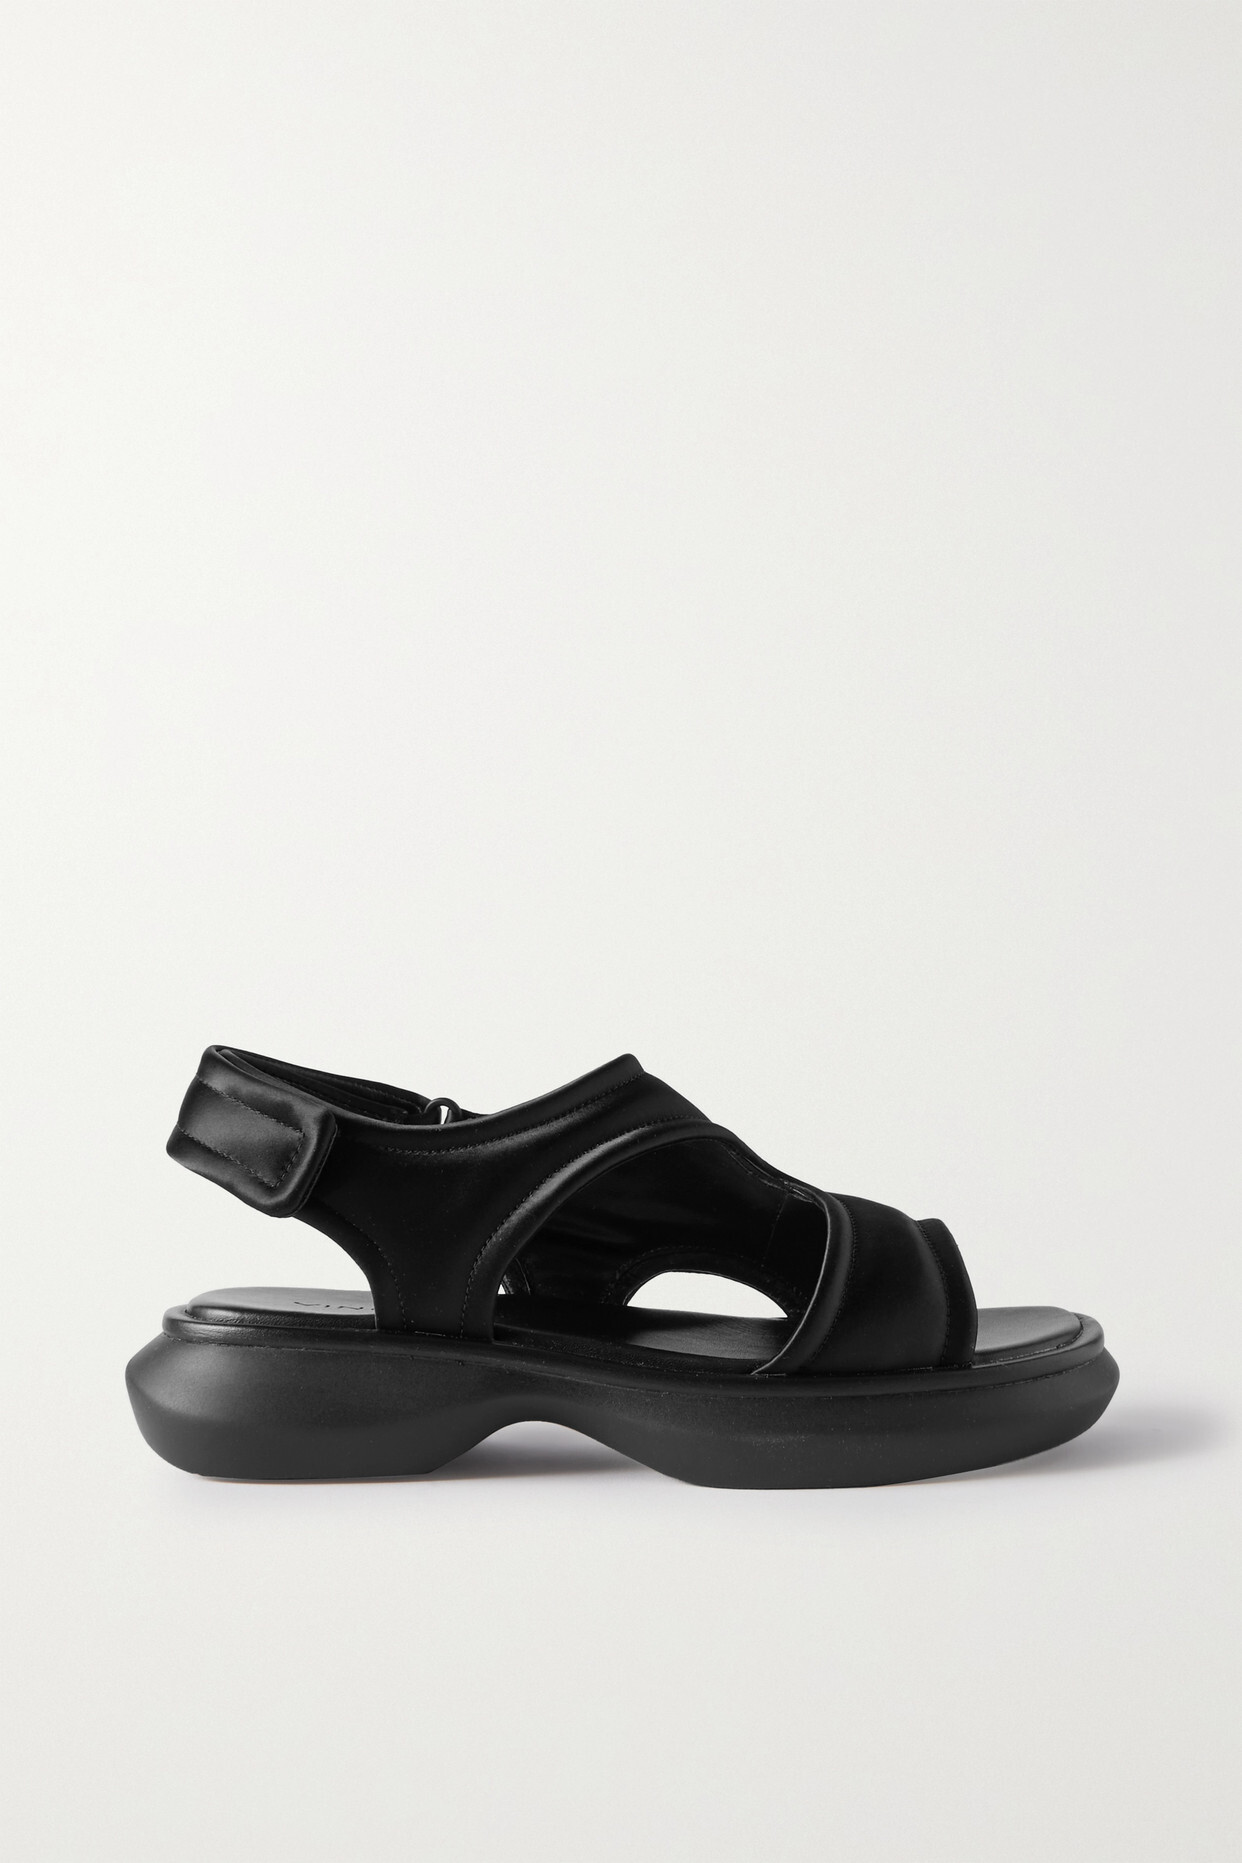 Vince - Fresca Satin Platform Sandals - Black